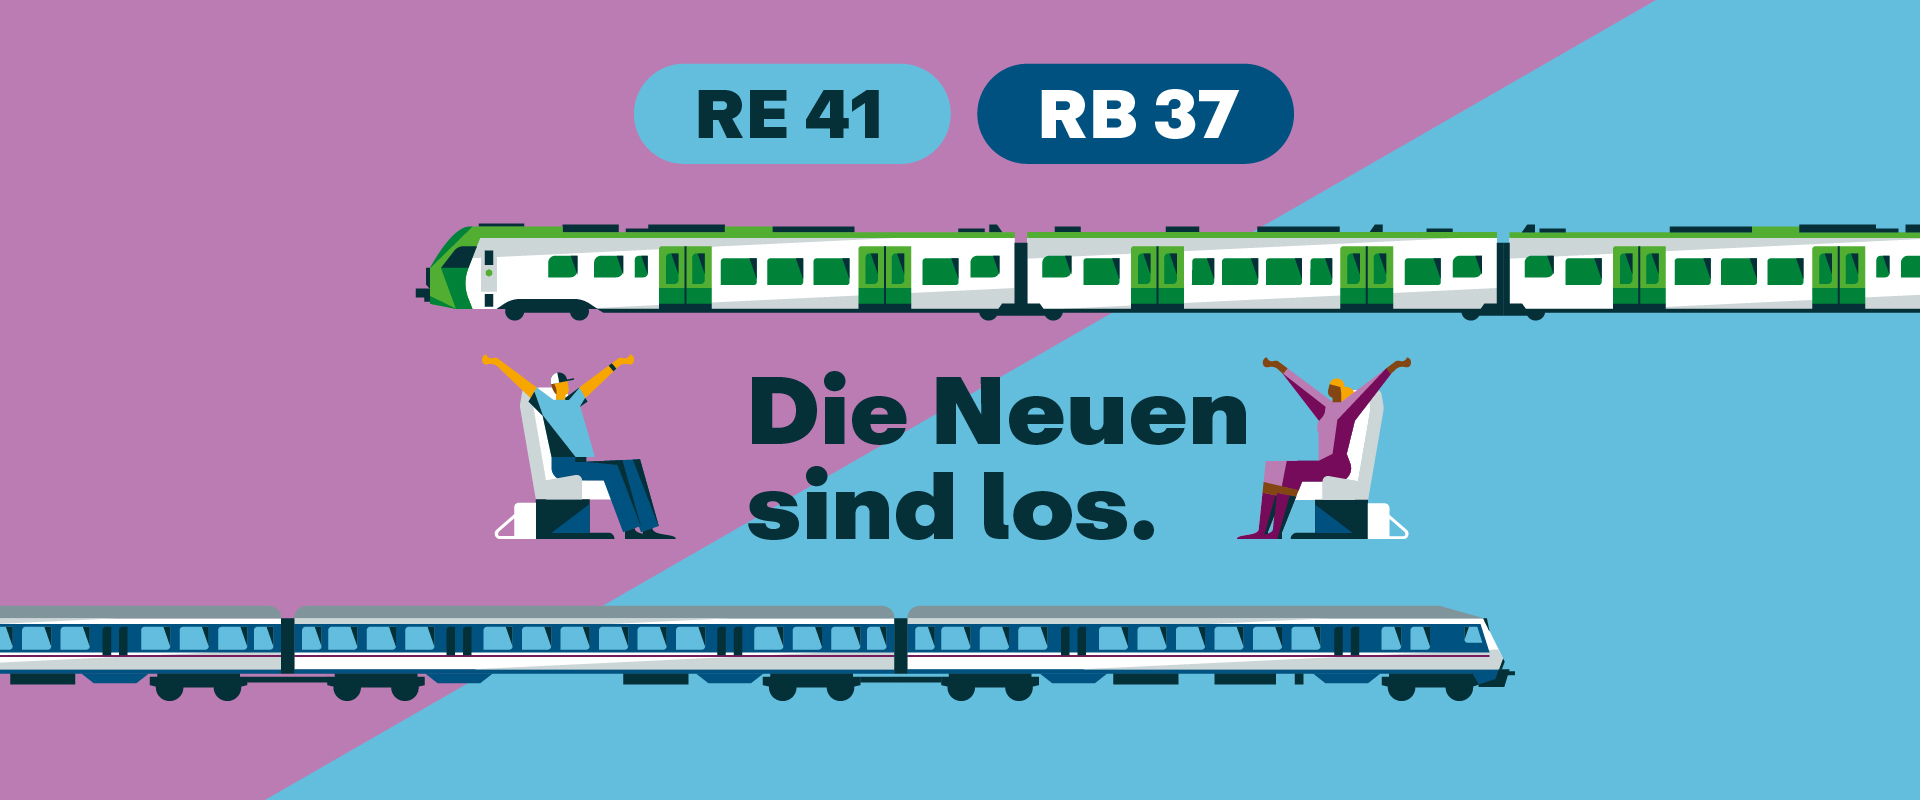 Illustration mit RE 41 und RB 37, zwei Zügen und sitzenden Fahrgästen, die die Hände in die Luft strecken, in der Mitte der Schriftzug "Die Neuen sind los"